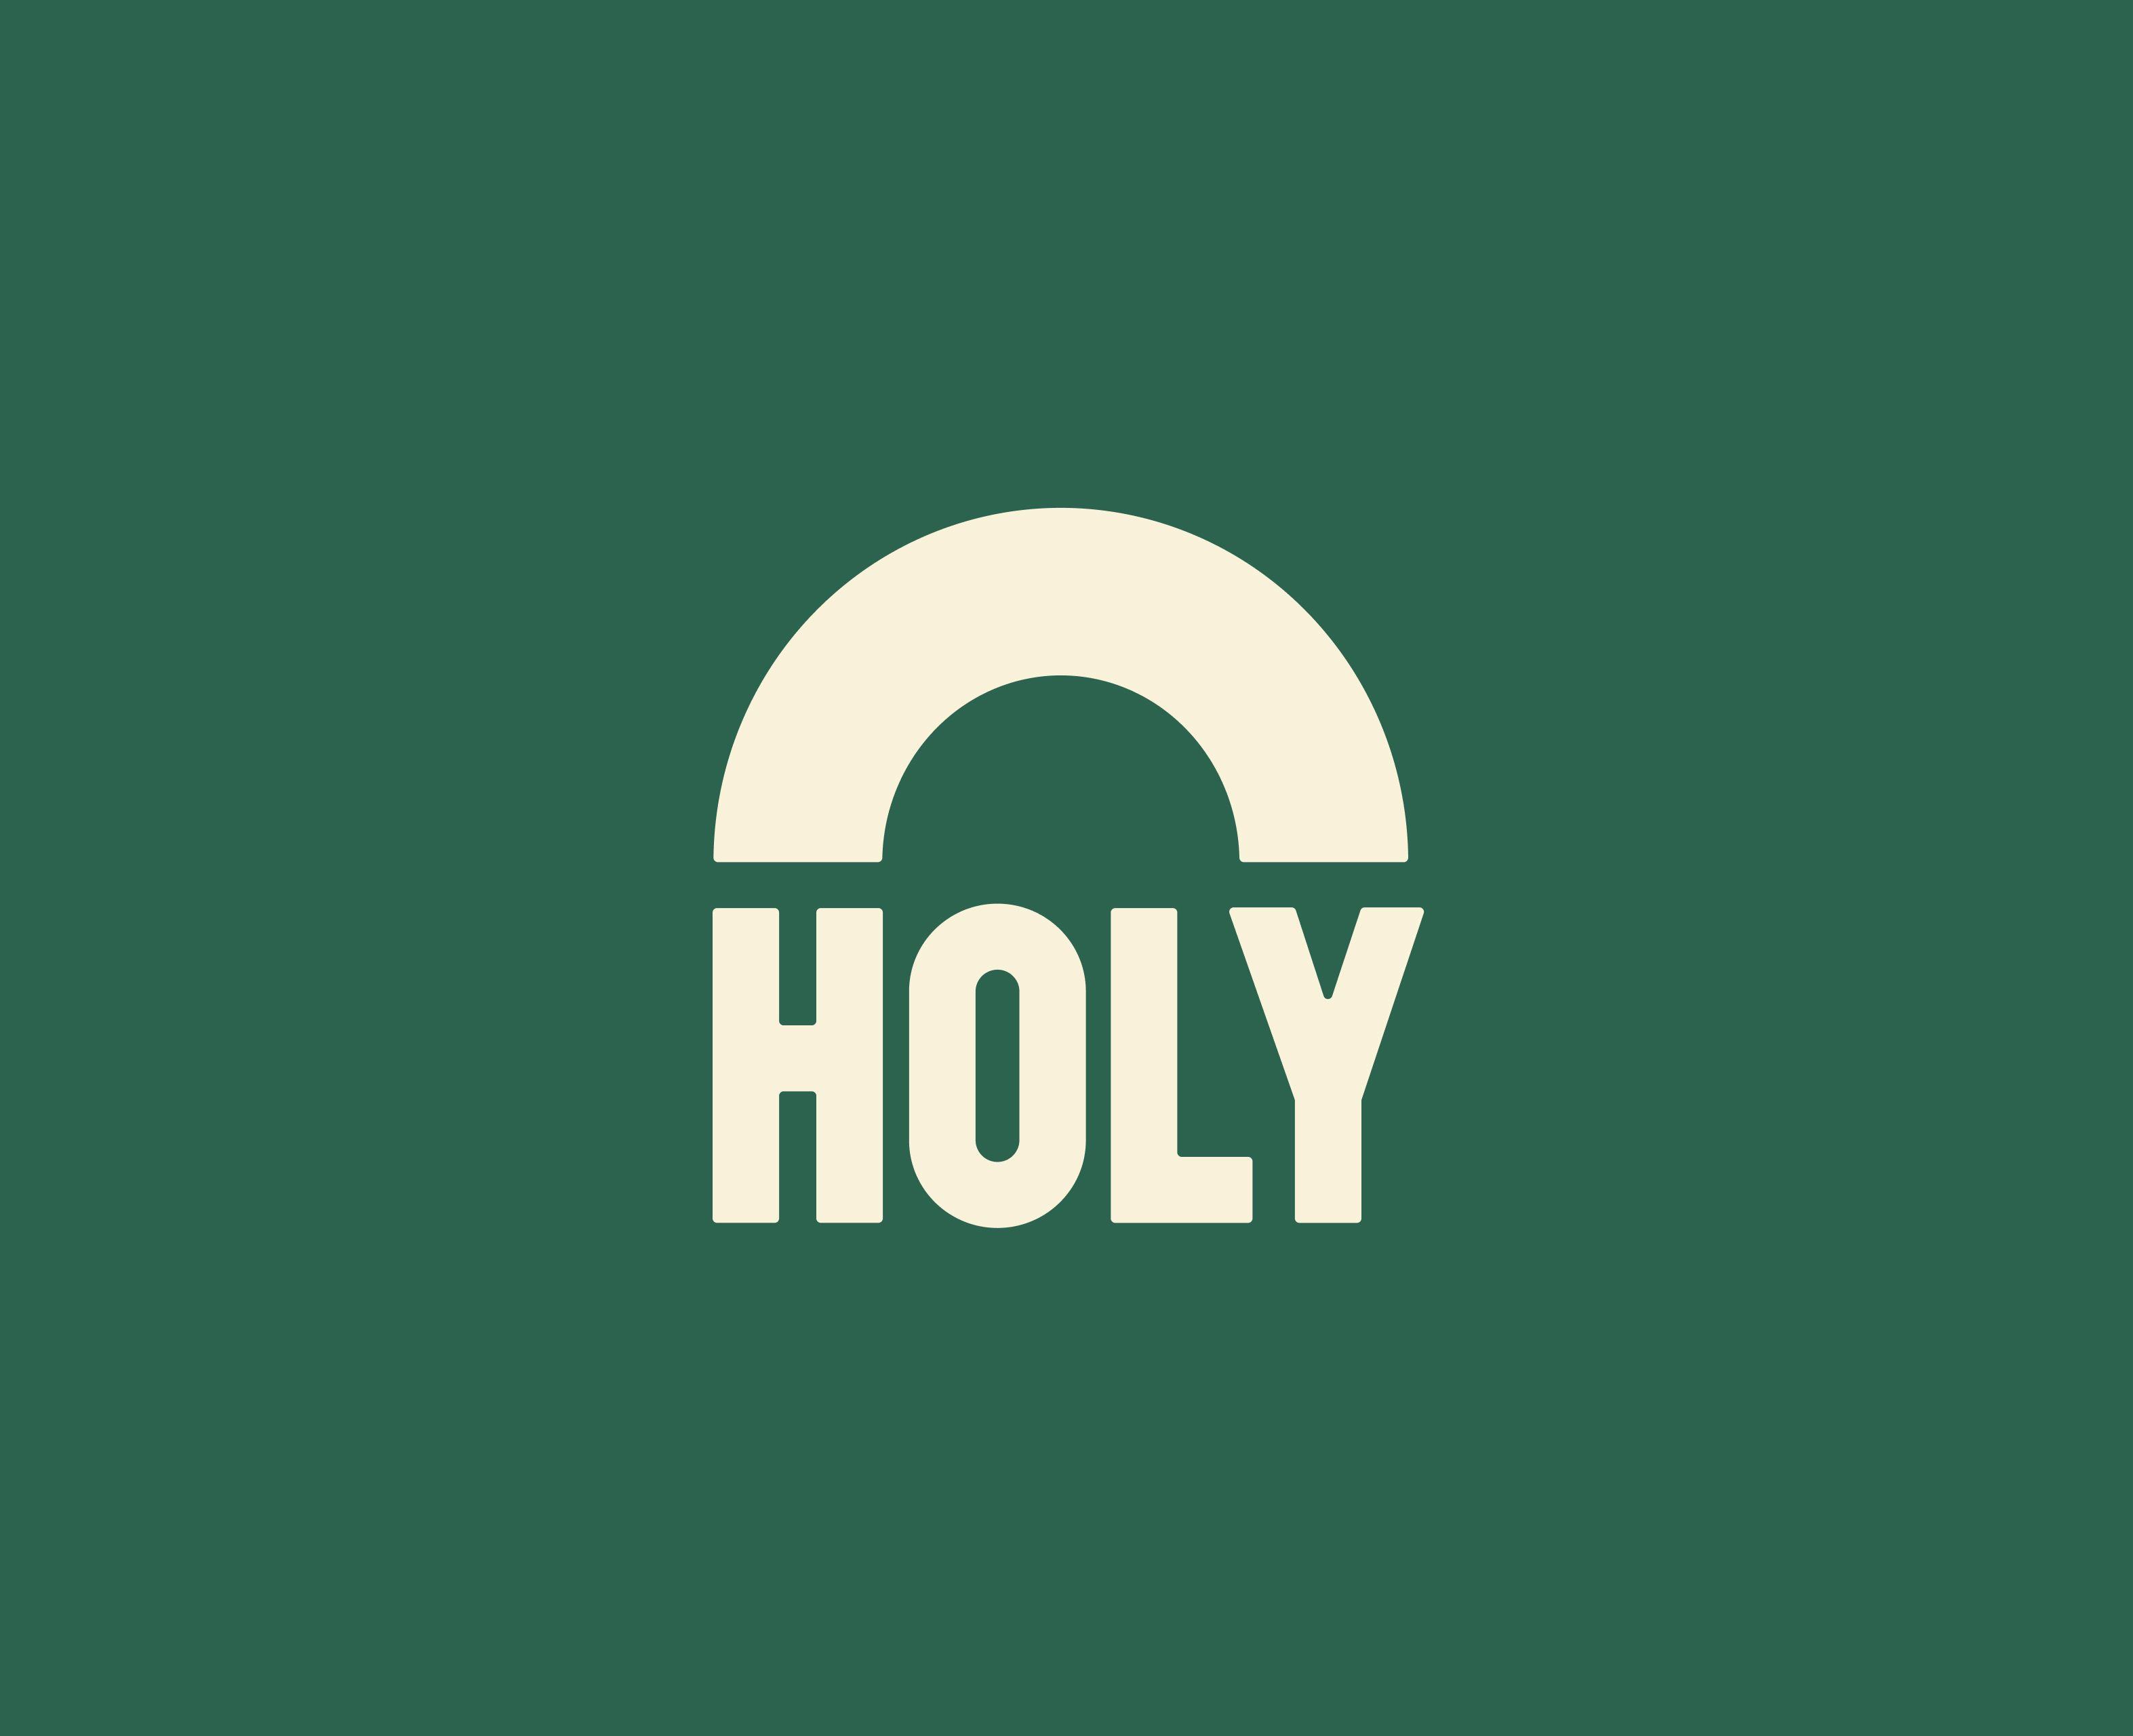 Holy logo